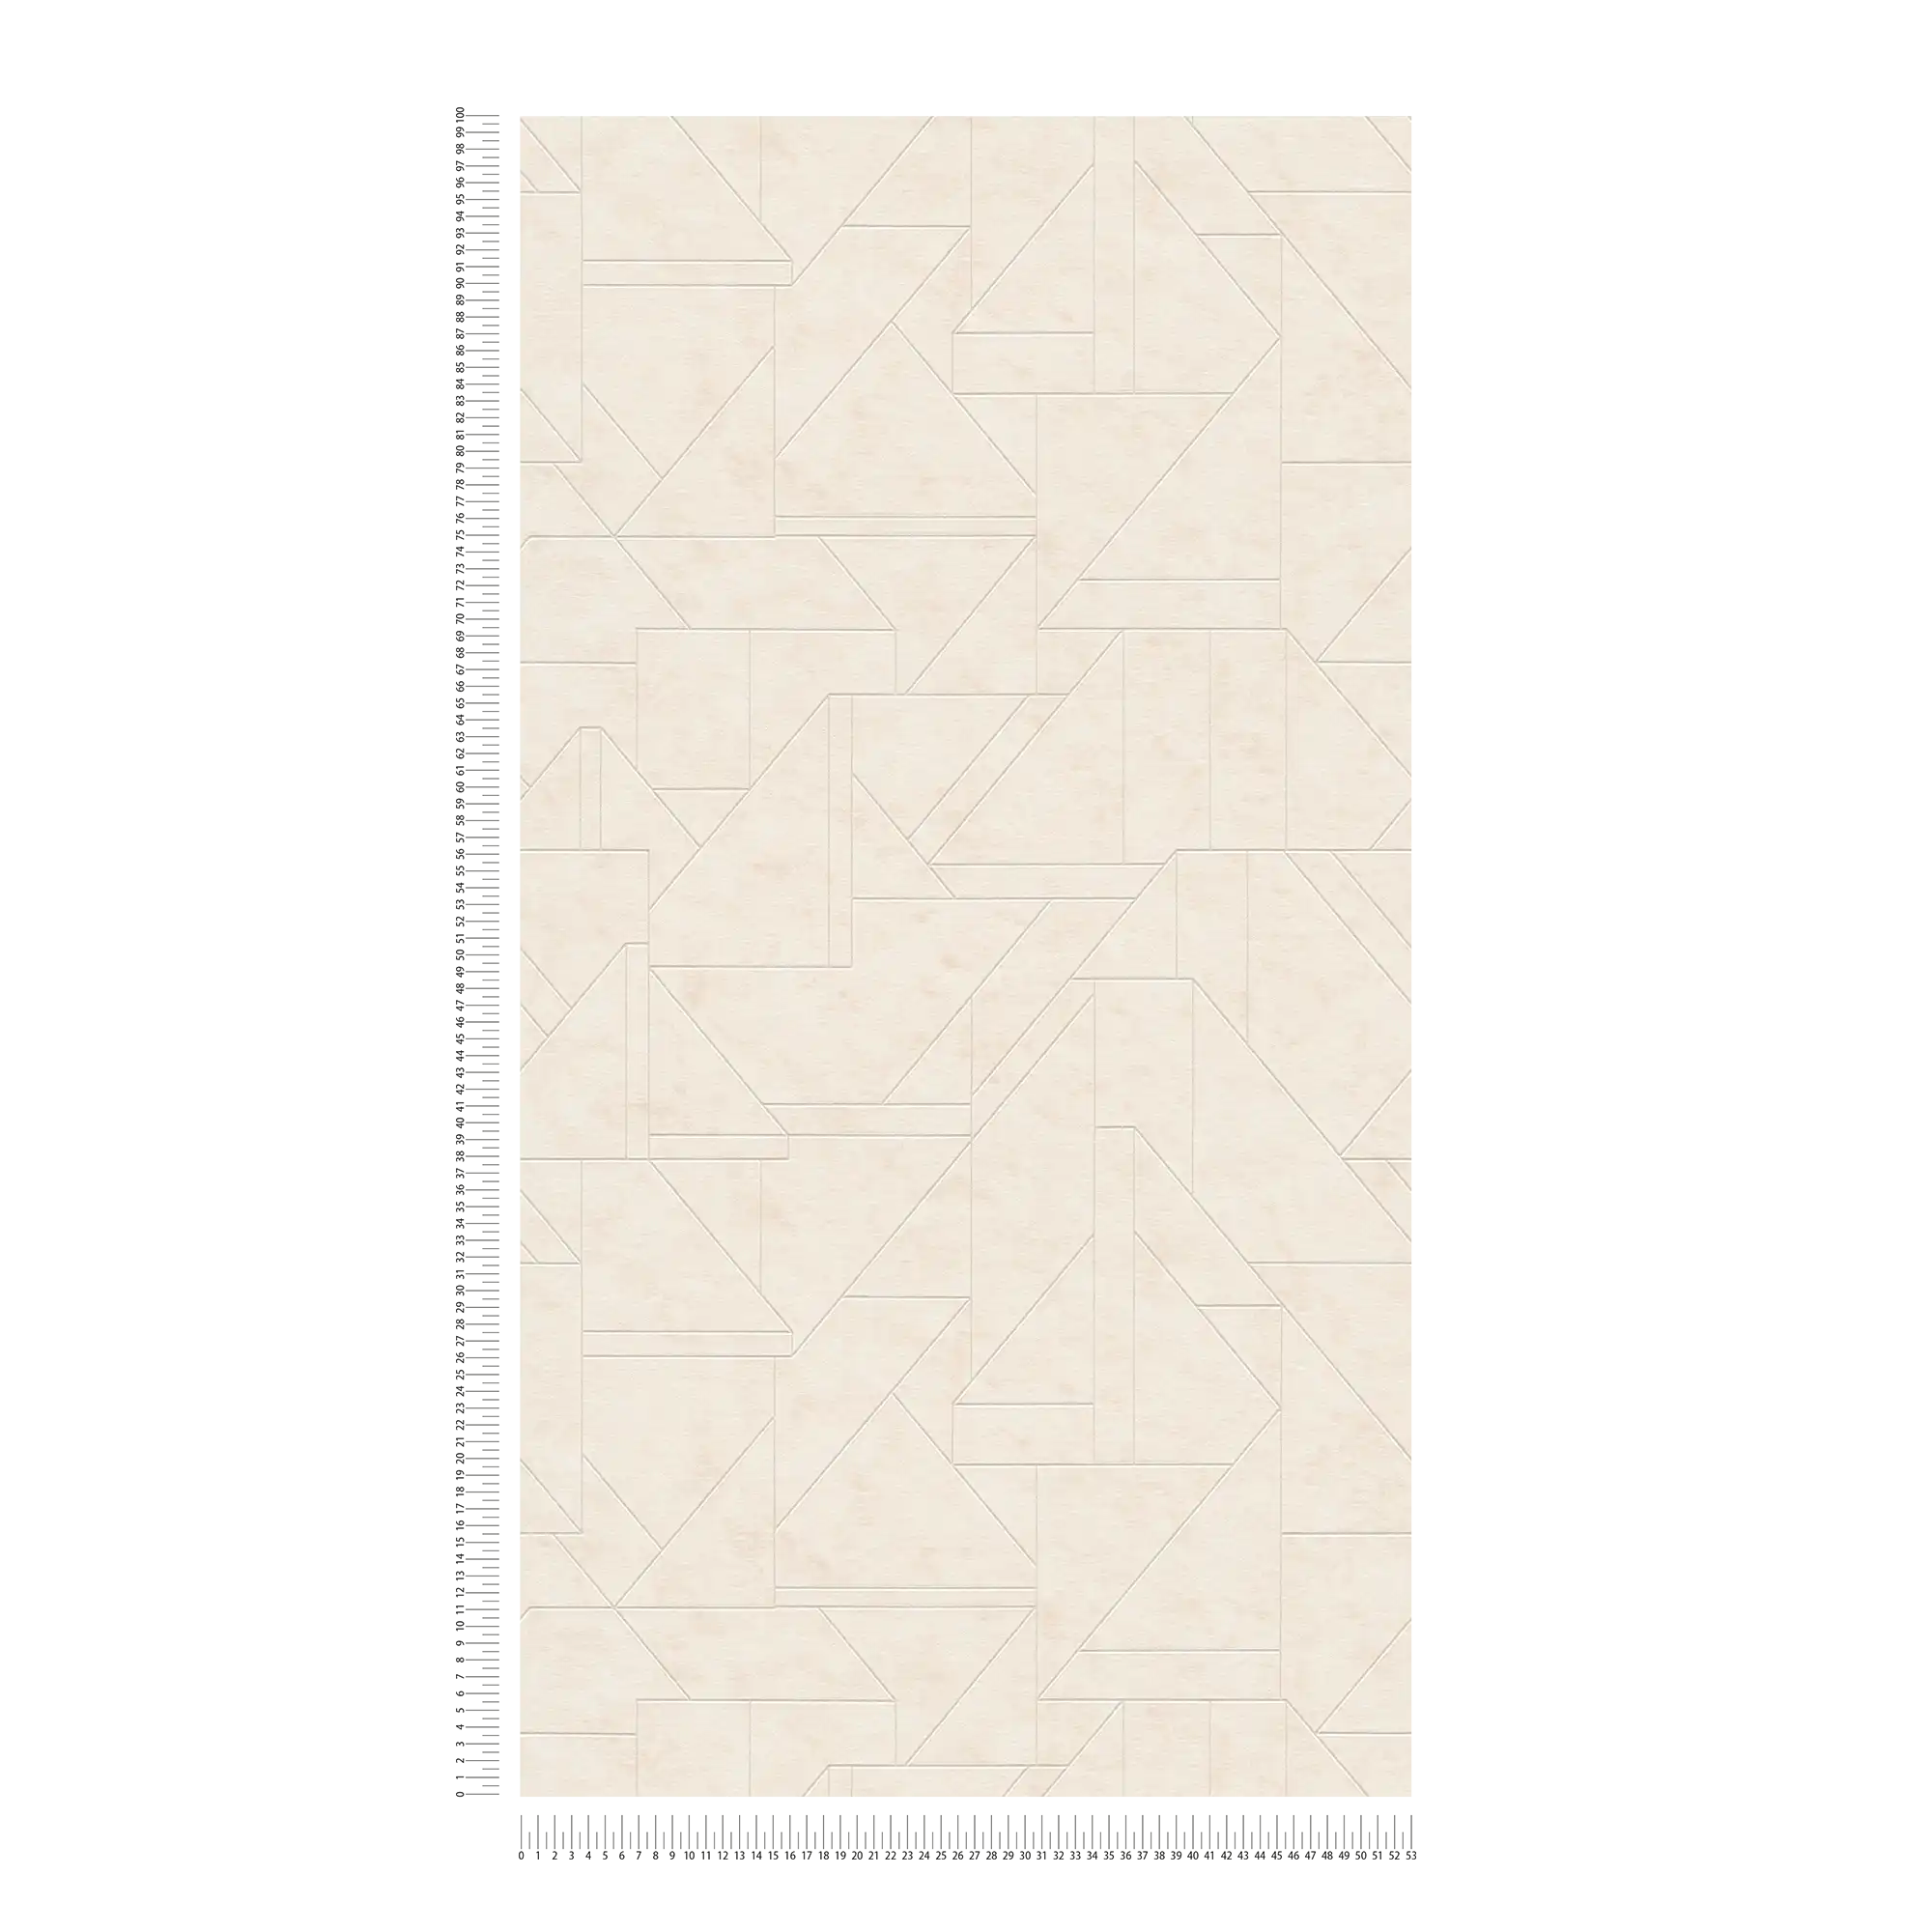             Vliestapete mit grafischen Linienmuster – Creme, Weiß, Silber
        